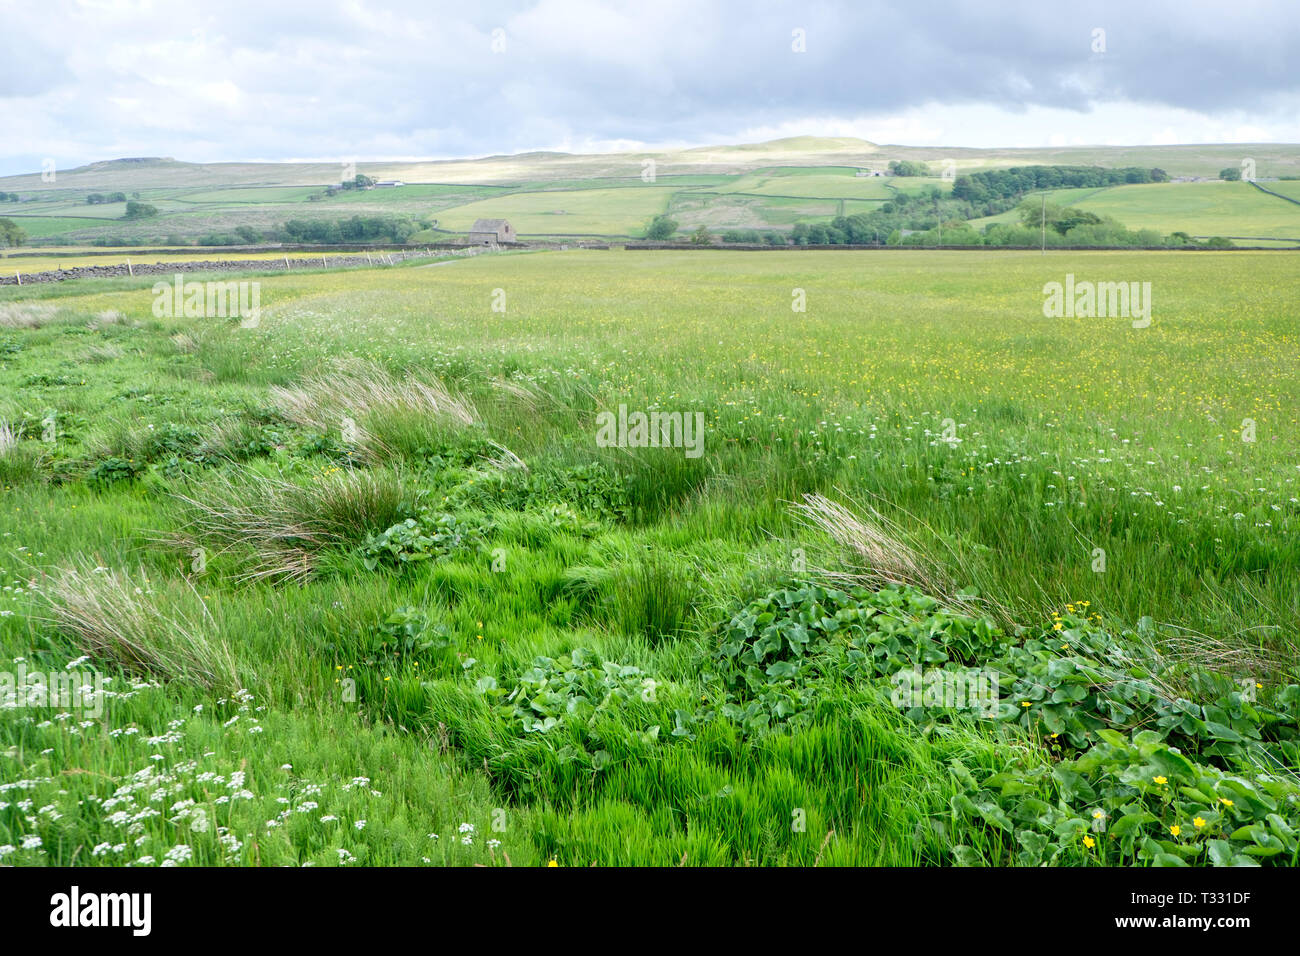 Le paysage agricole traditionnel de Hannah's Meadow réserve naturelle, une partie de la confiance dans la faune de Durham, Durham Comté Teesdale. Banque D'Images